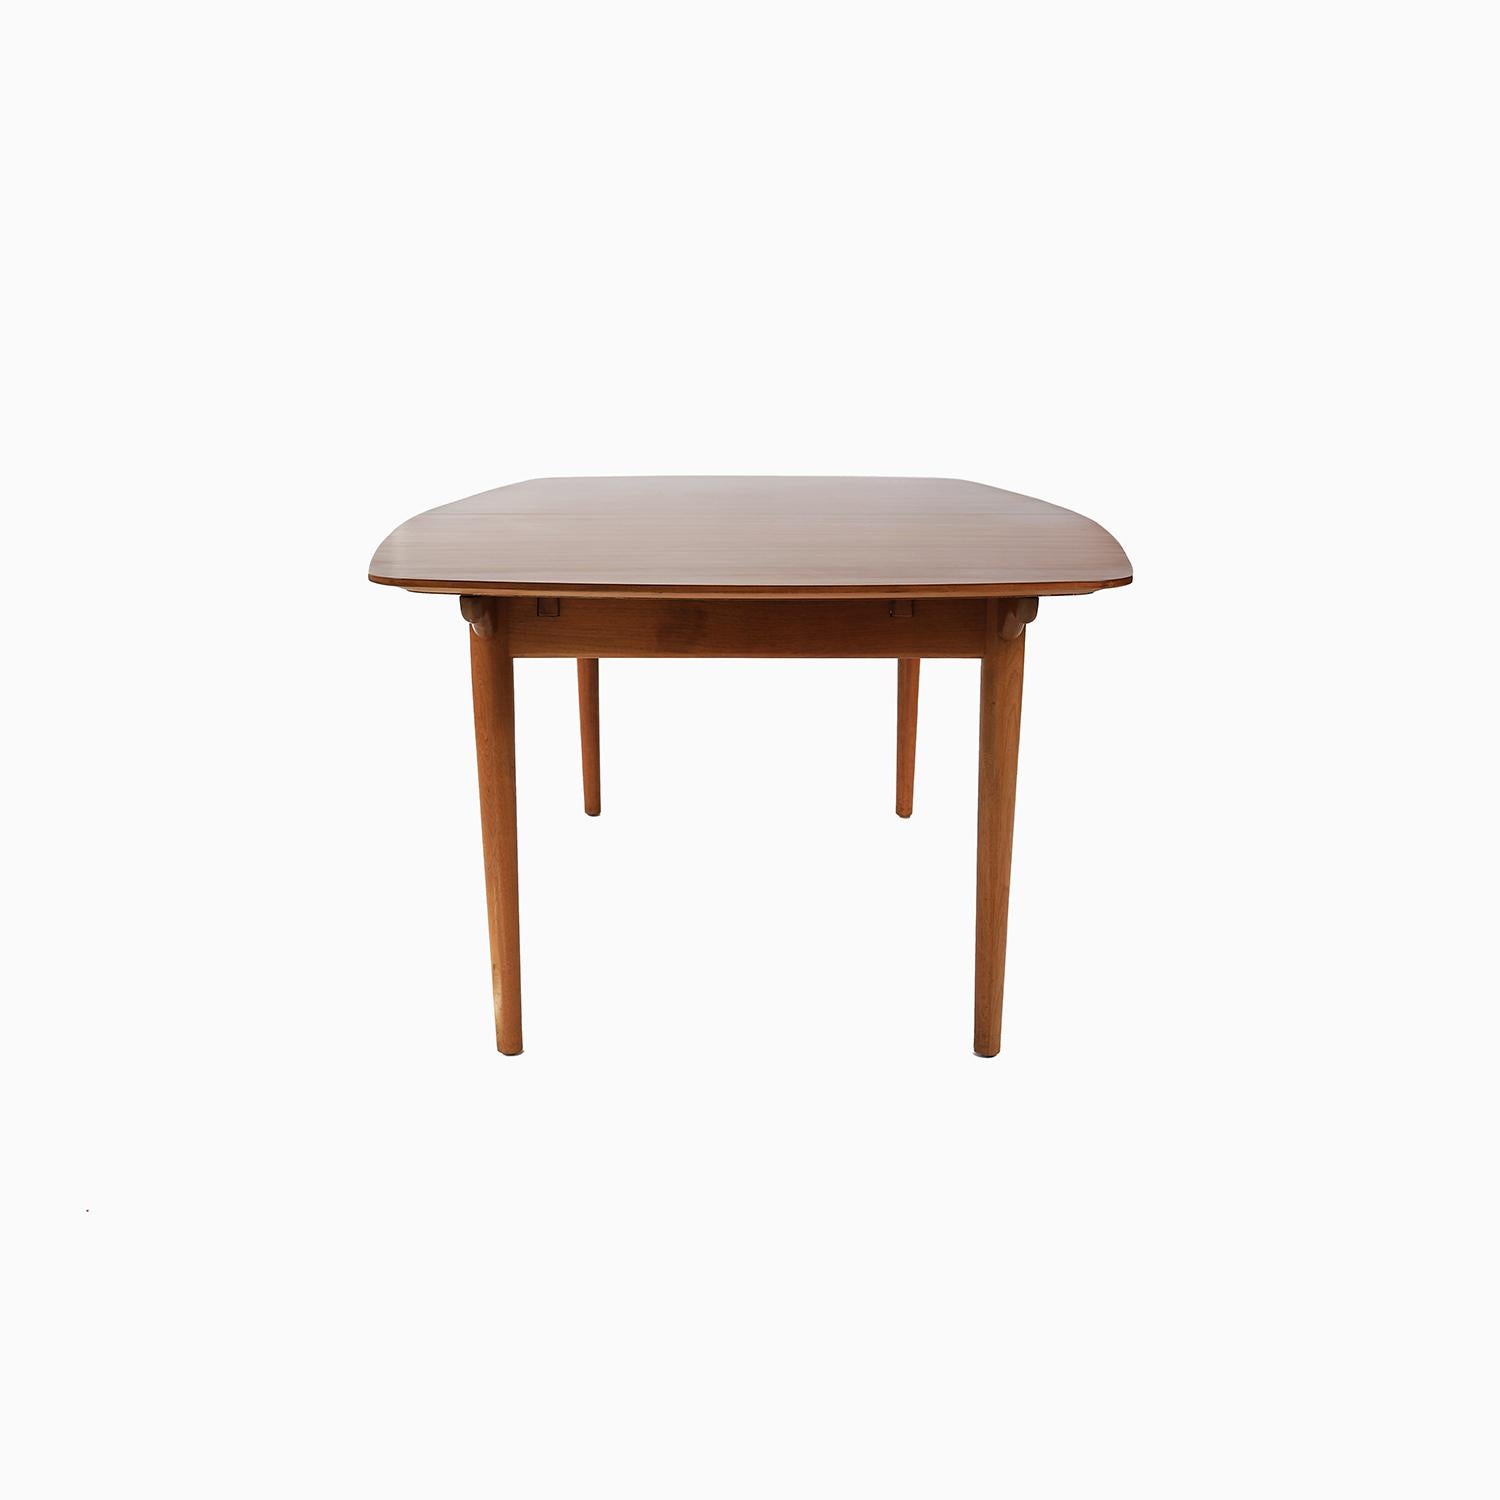 American Danish Modern Finn Juhl Baker Furniture Dining Table For Sale